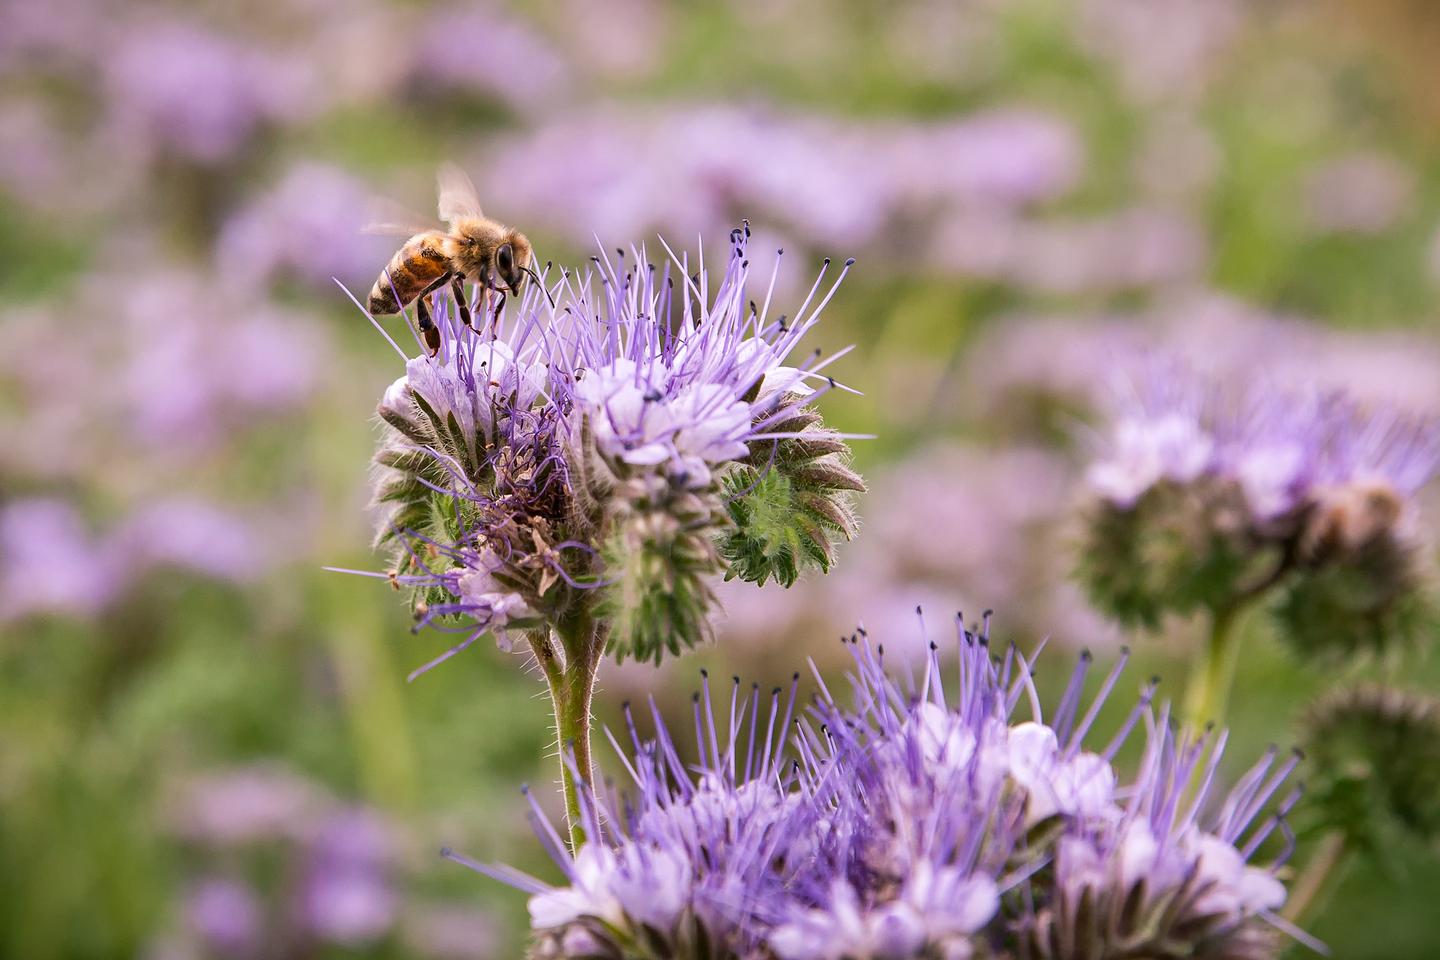 Detailansicht einer lila blühenden Phaceliapflanze mit Biene